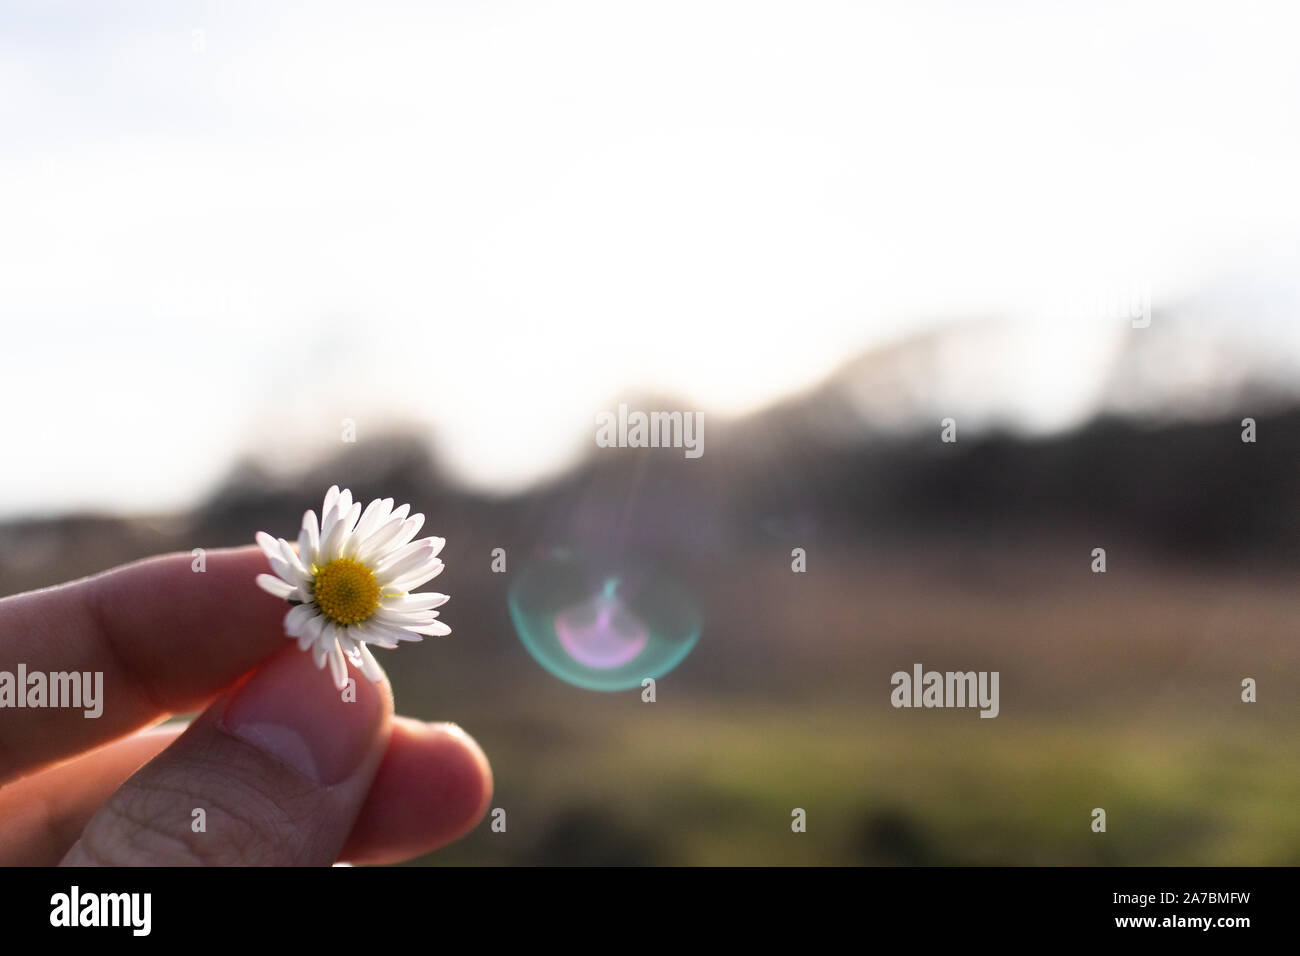 Hängt ein Daisy Flower in voller Blüte mit der Hand auf einem blauen sonnigen Himmel Landschaft Stockfoto